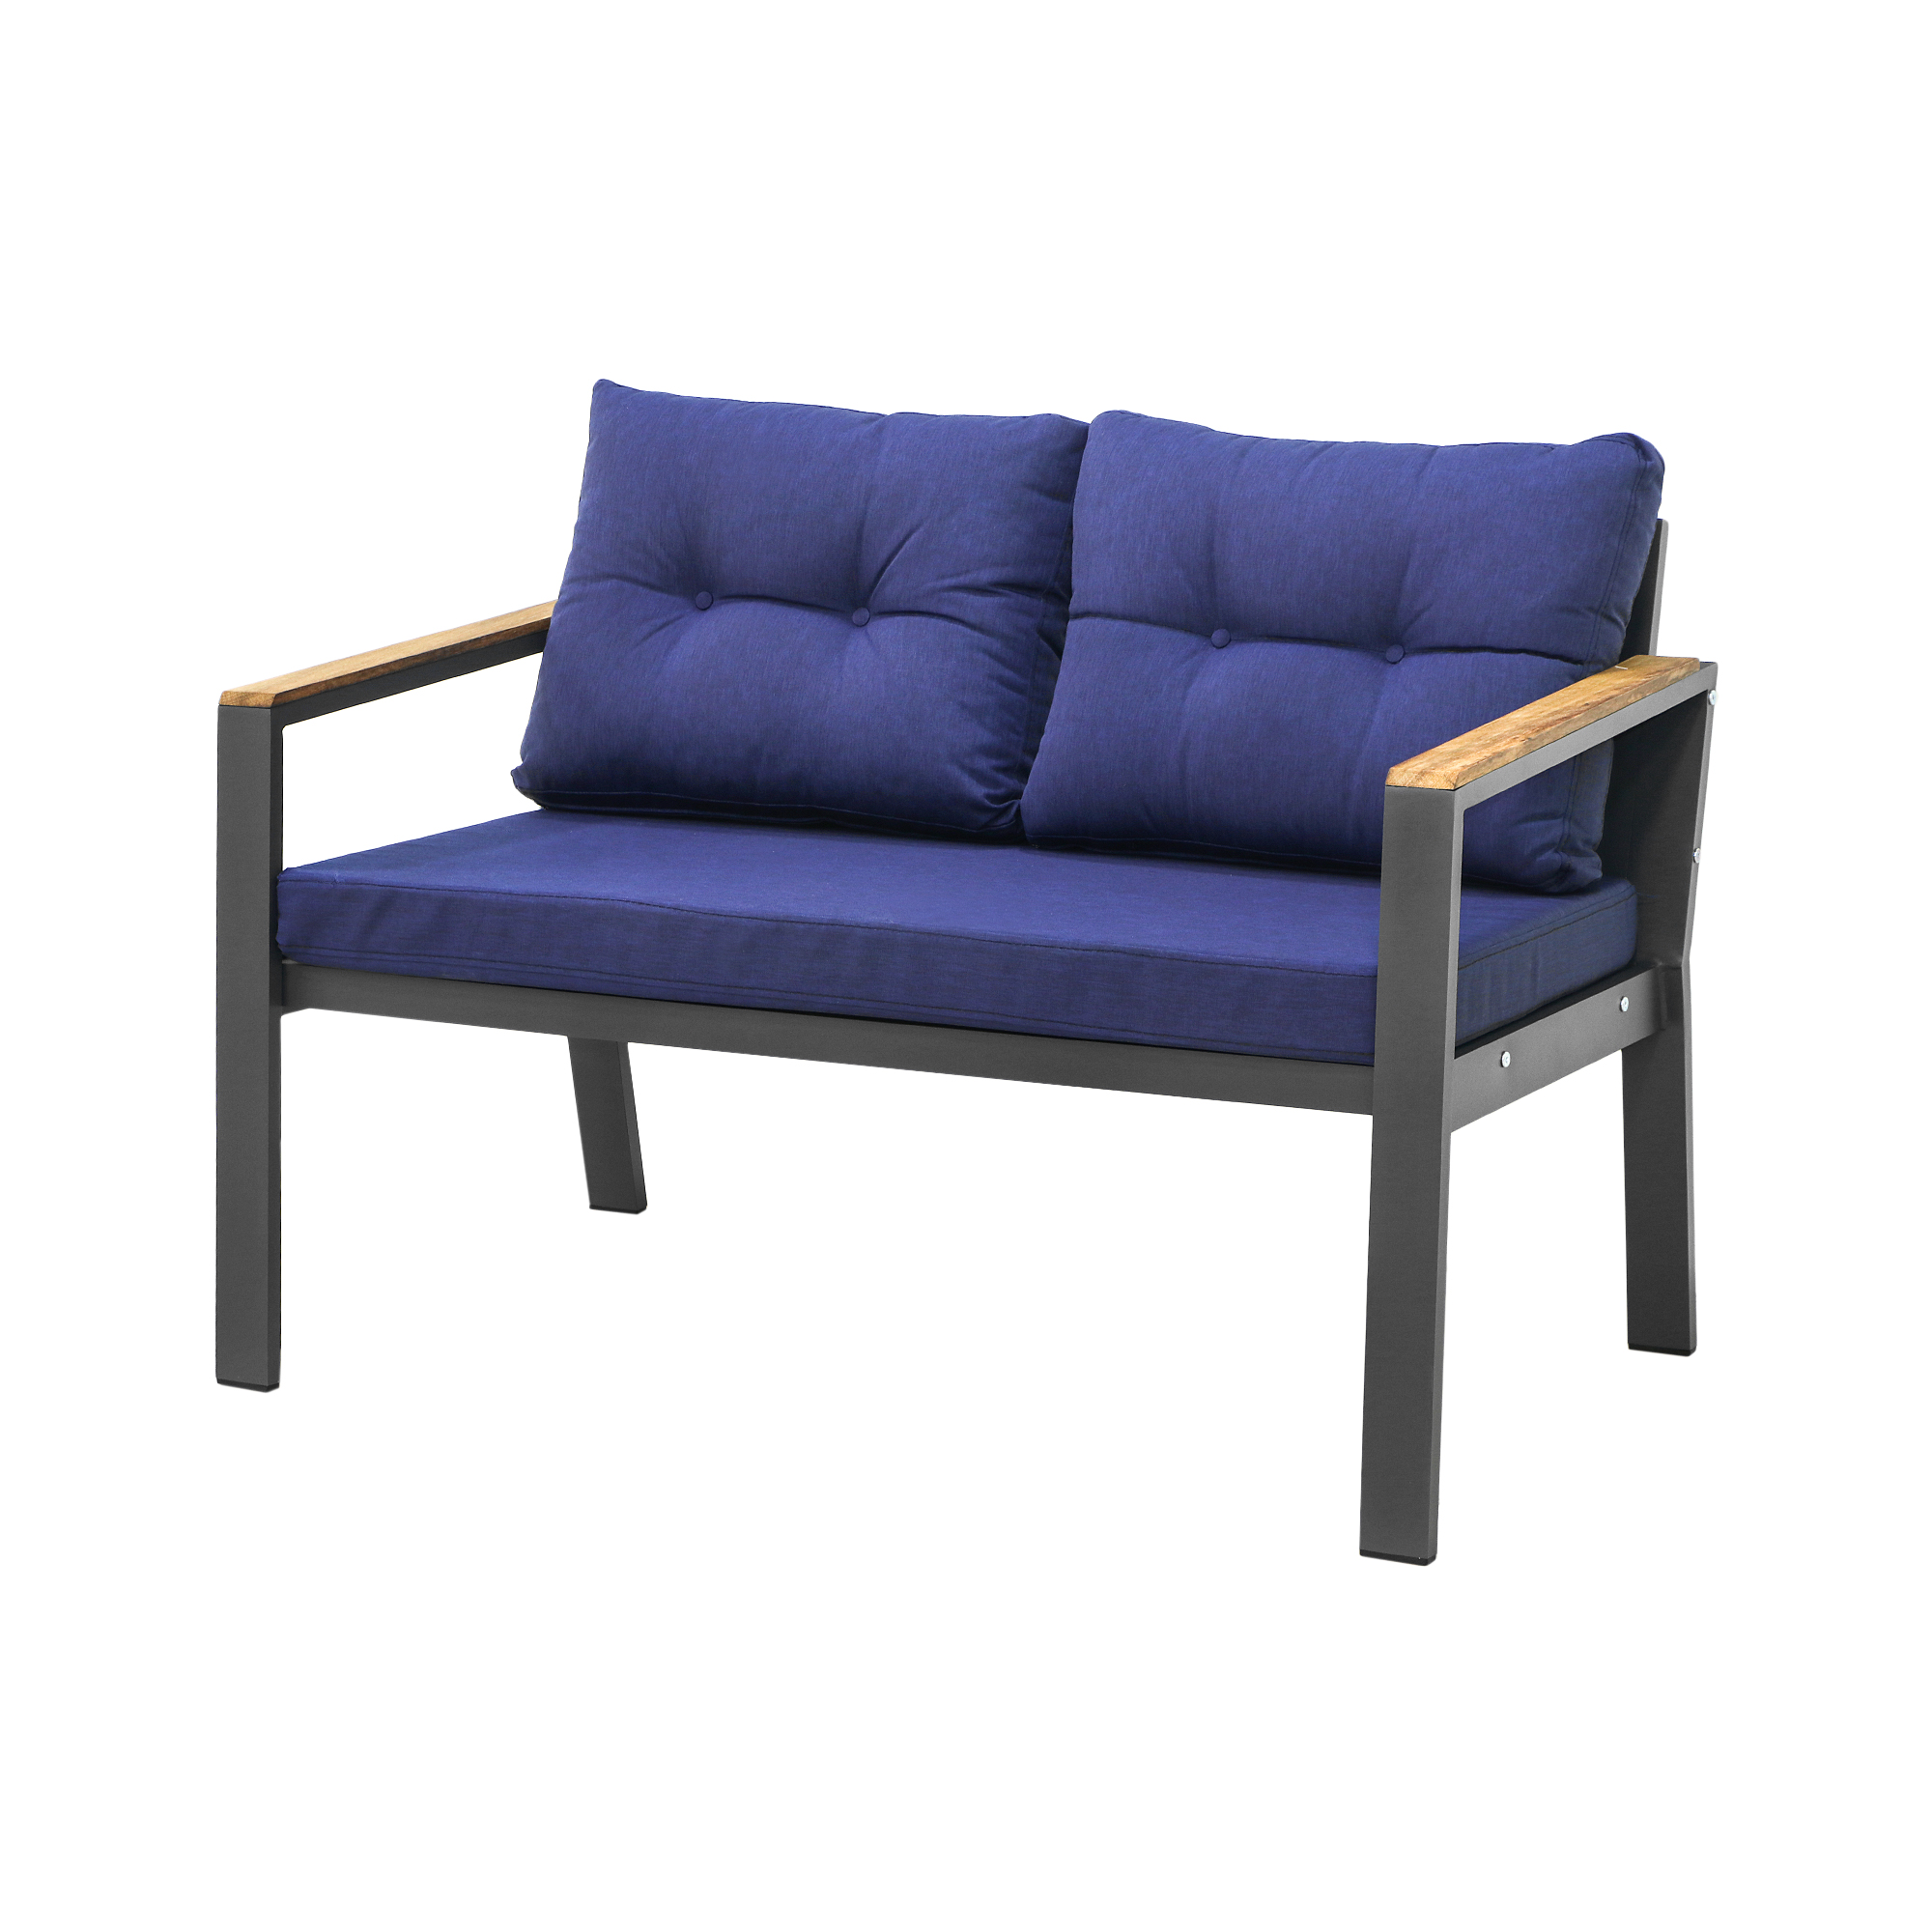 Комплект мебели Erinoz Daphne, цвет серый, размер 60x124x75 см - фото 2